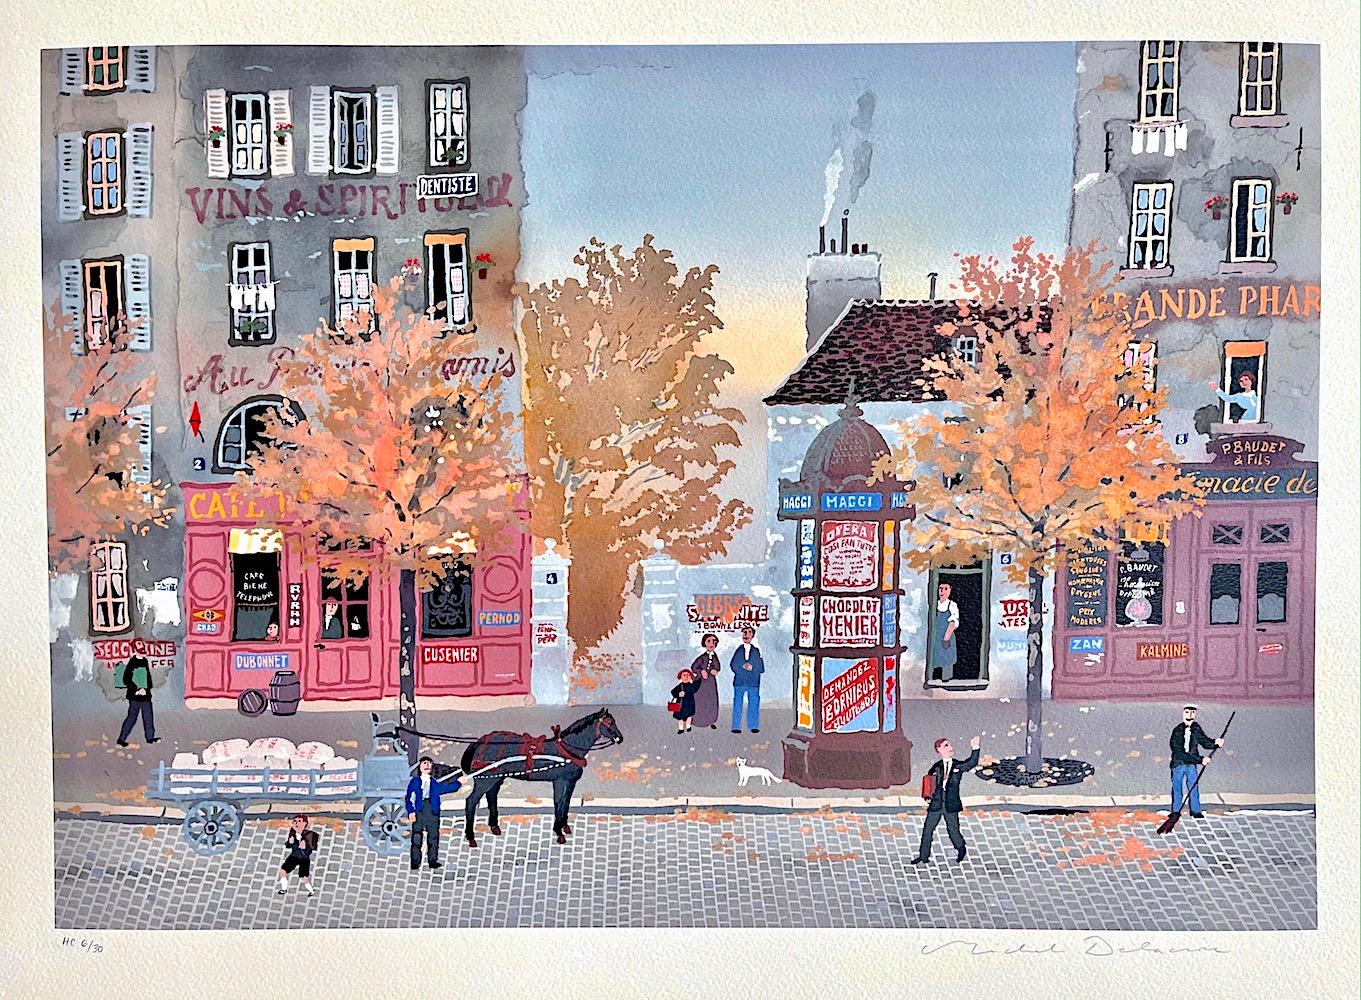 Un signe de la Main, Signed Lithograph, Autumn Street Scene, Iconic Paris Kiosk  - Print by Michel Delacroix